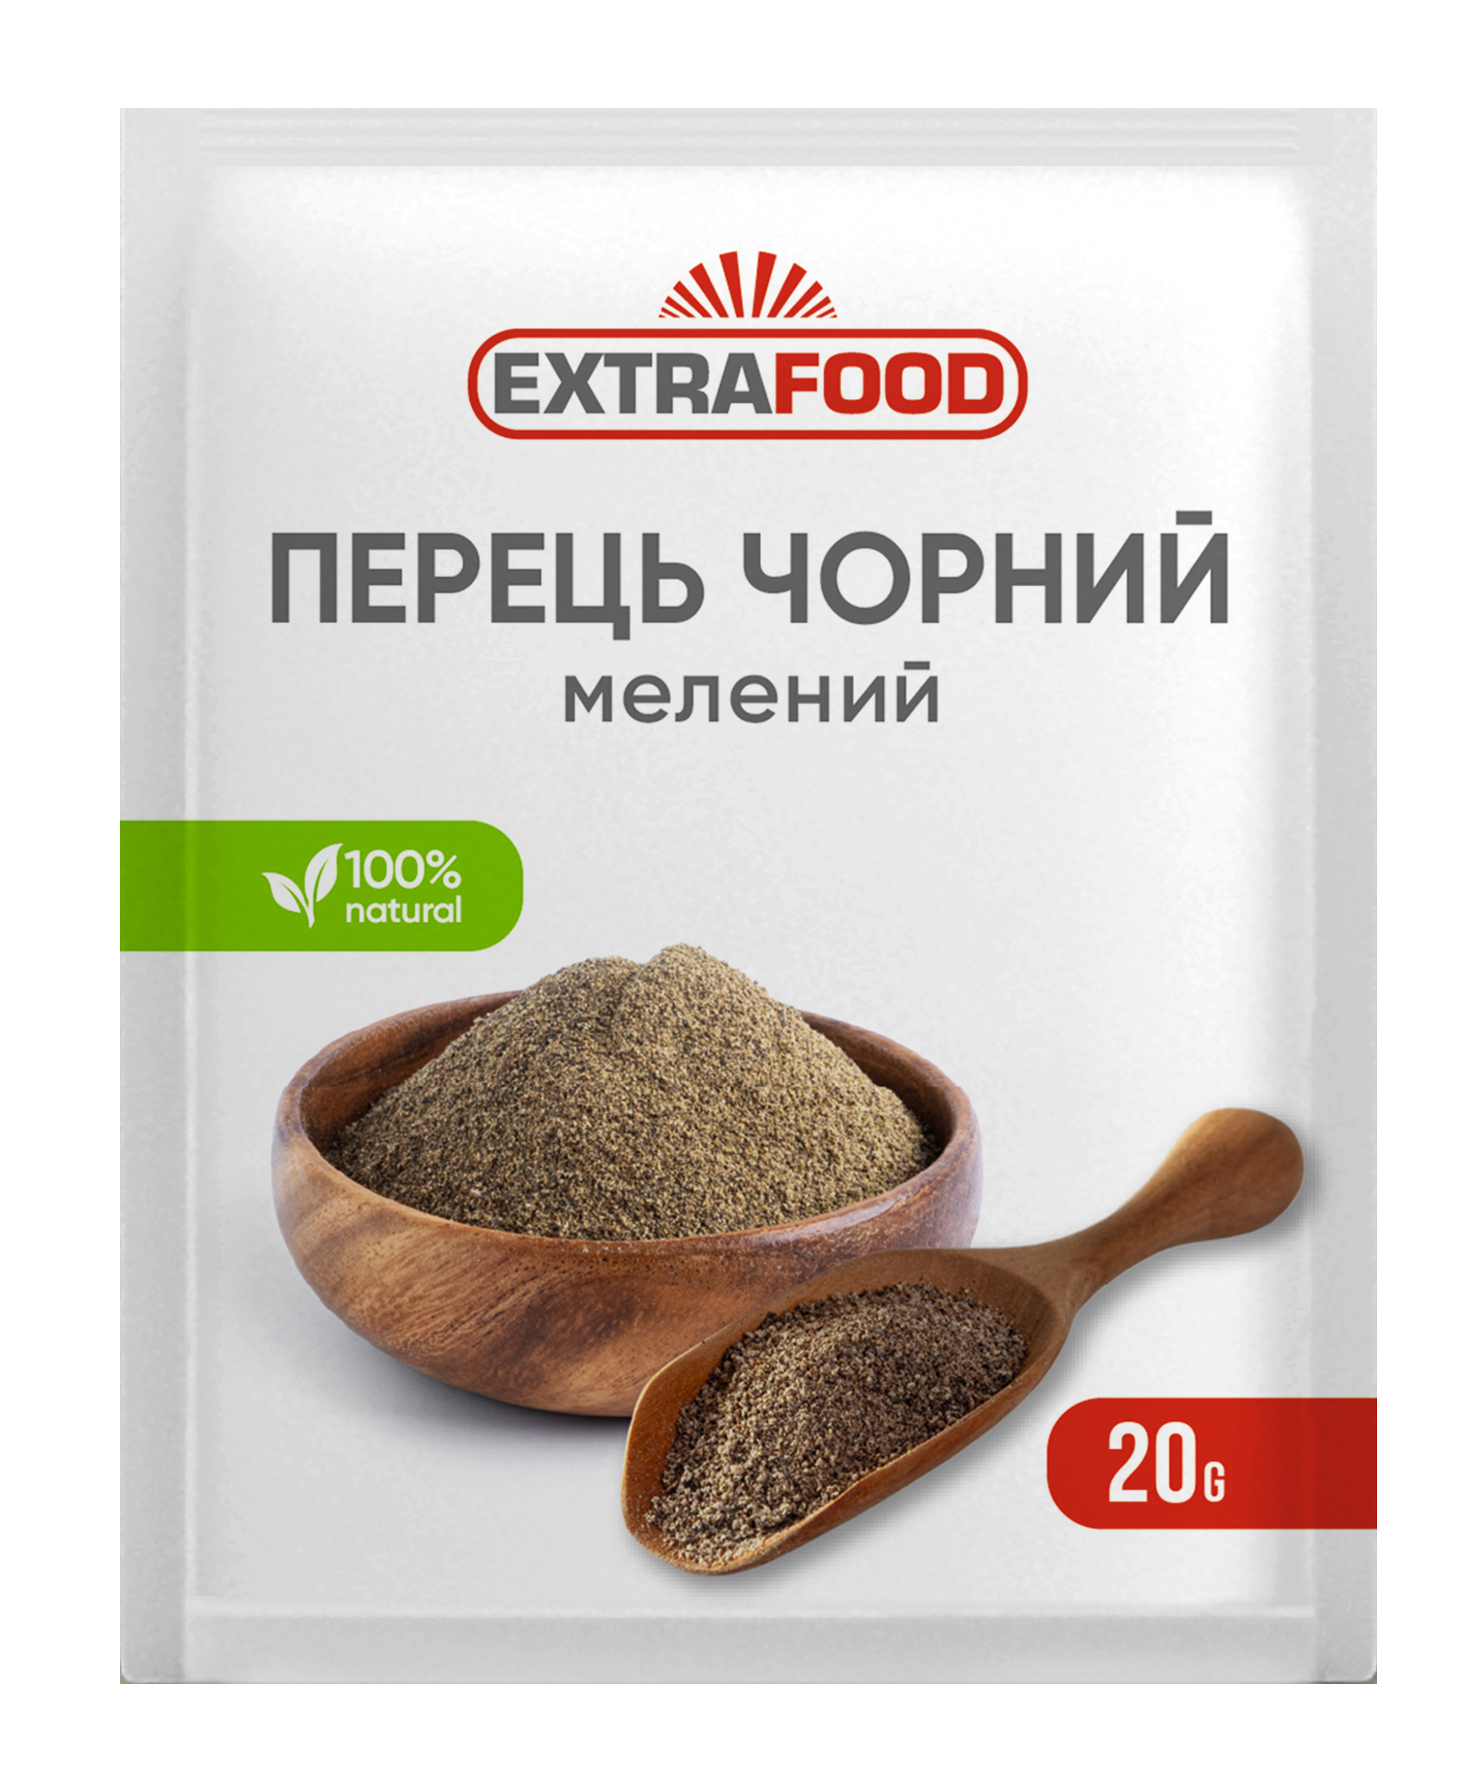 Перец черный молотый EXTRA FOOD 20 г